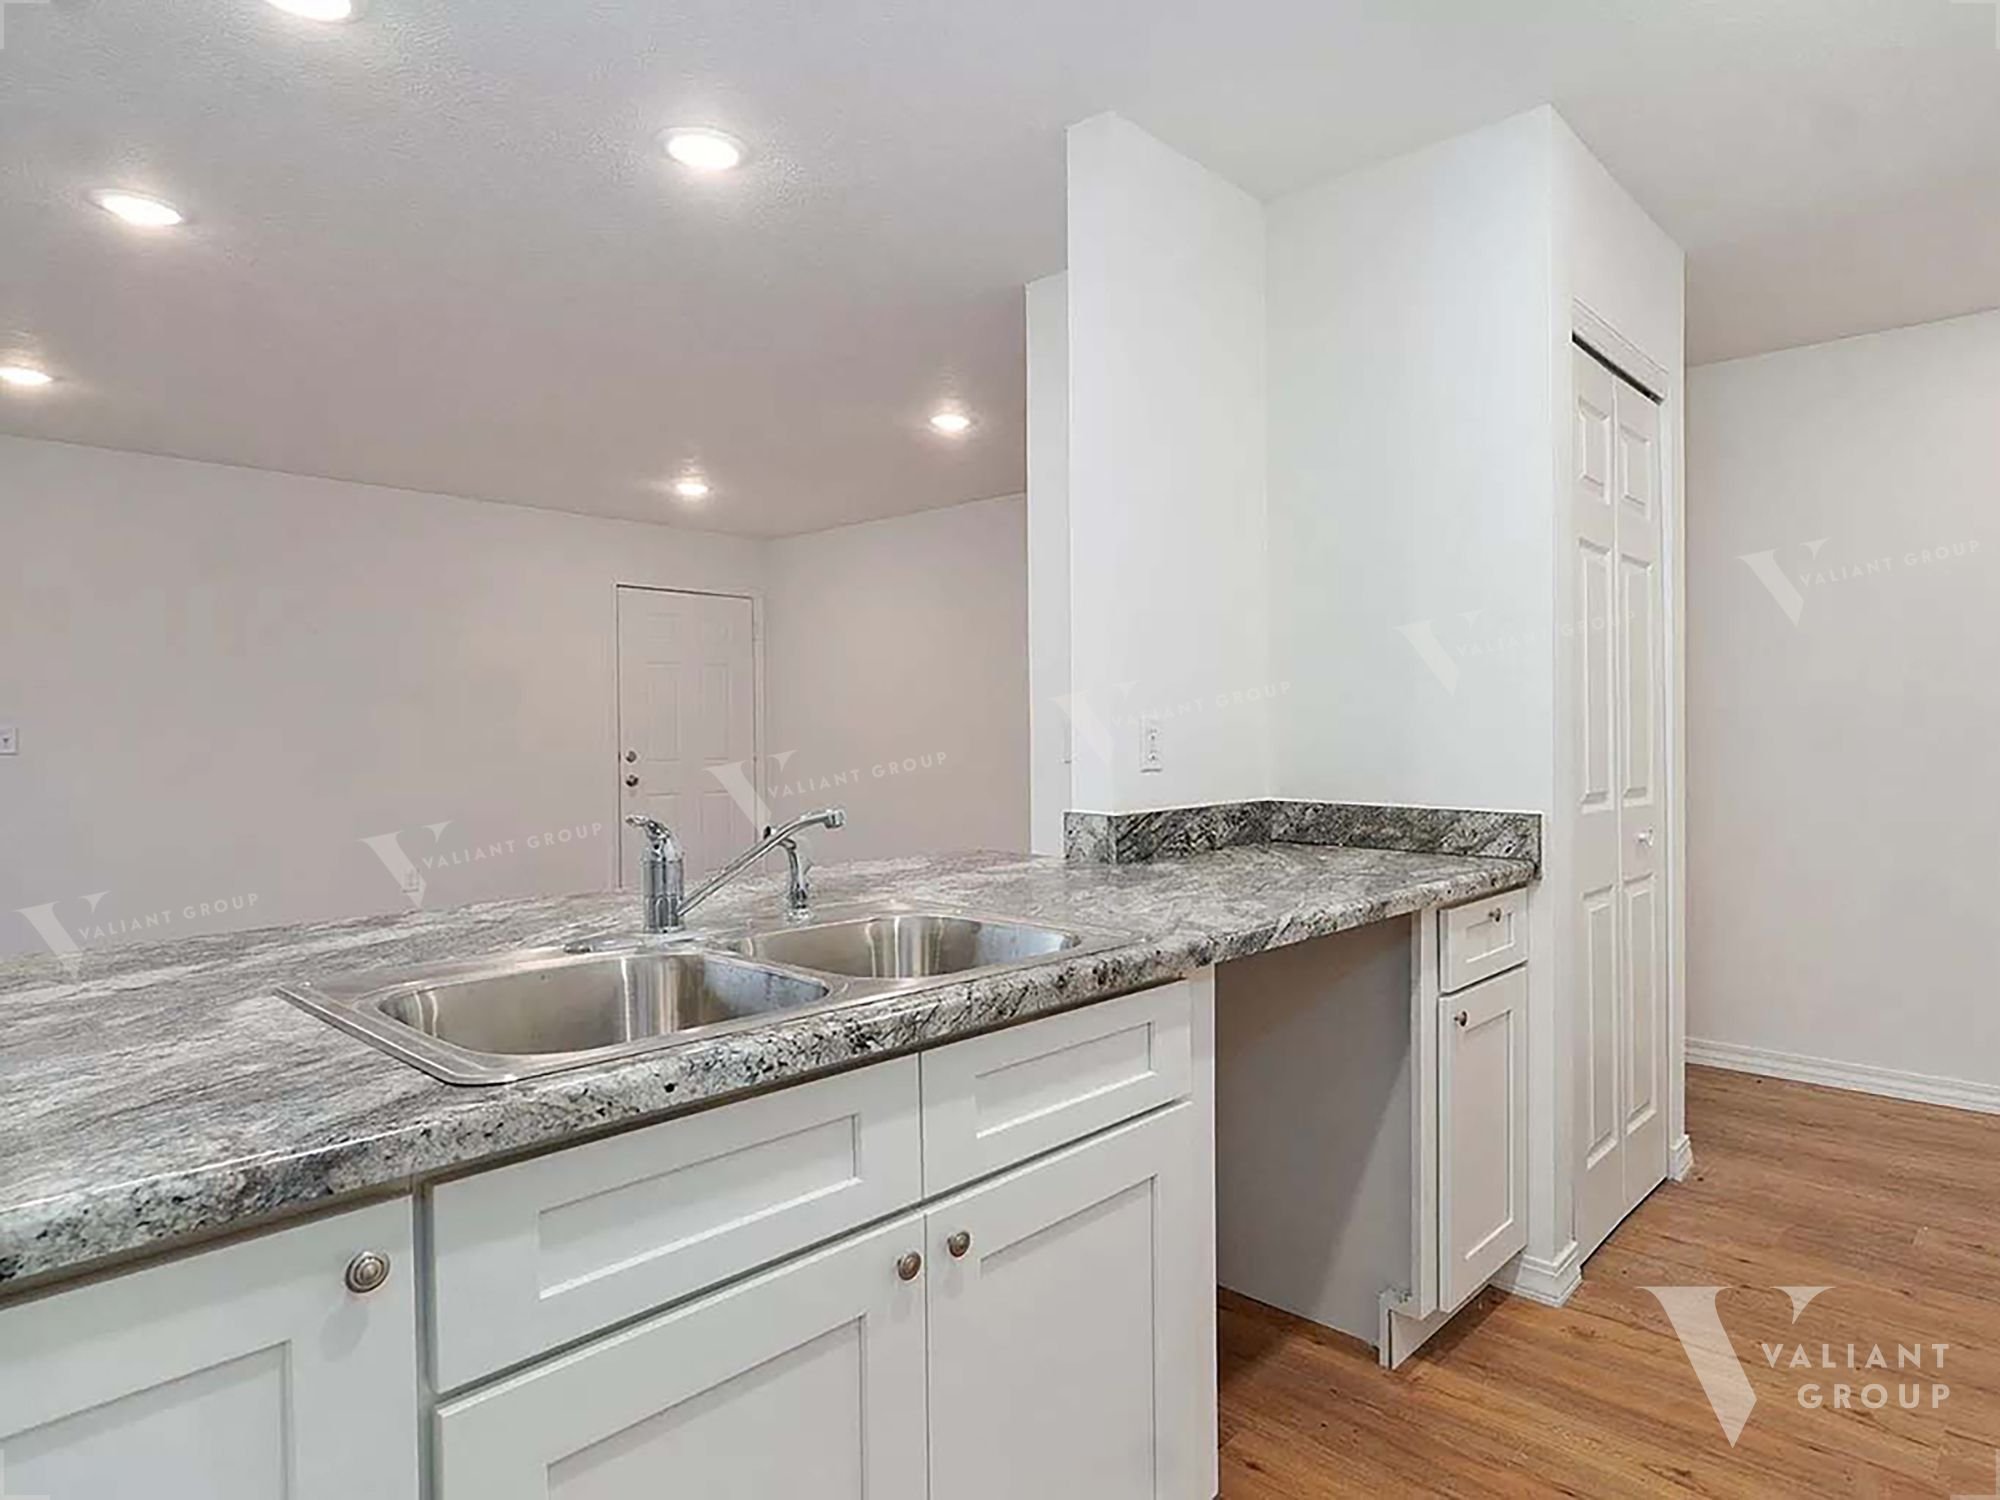 Rental Duplex Springfield MO 1602 W Scott St Unit B - kitchen sink.jpg